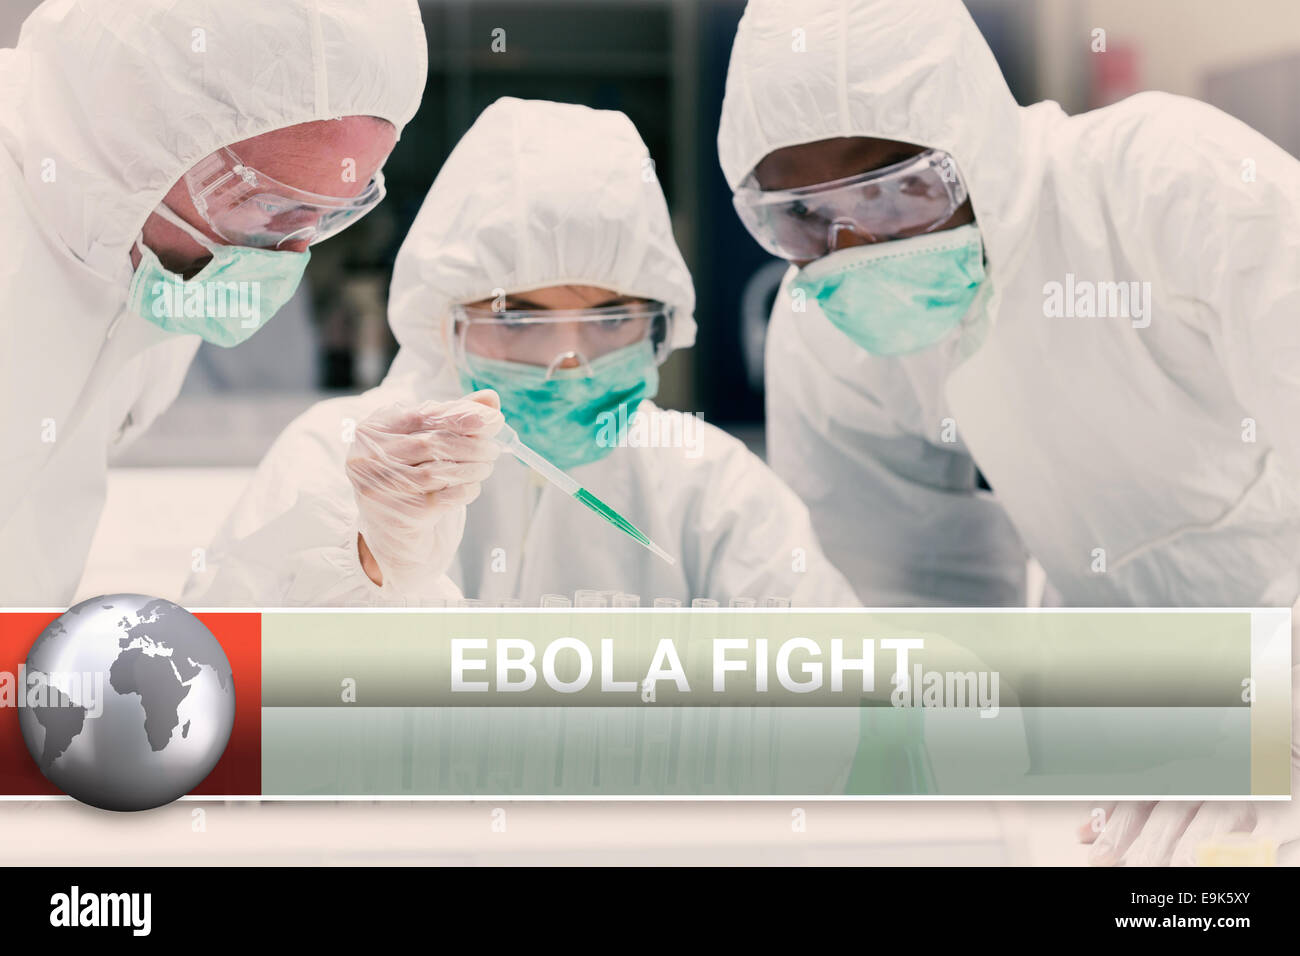 El ébola news flash con imágenes médicas Foto de stock